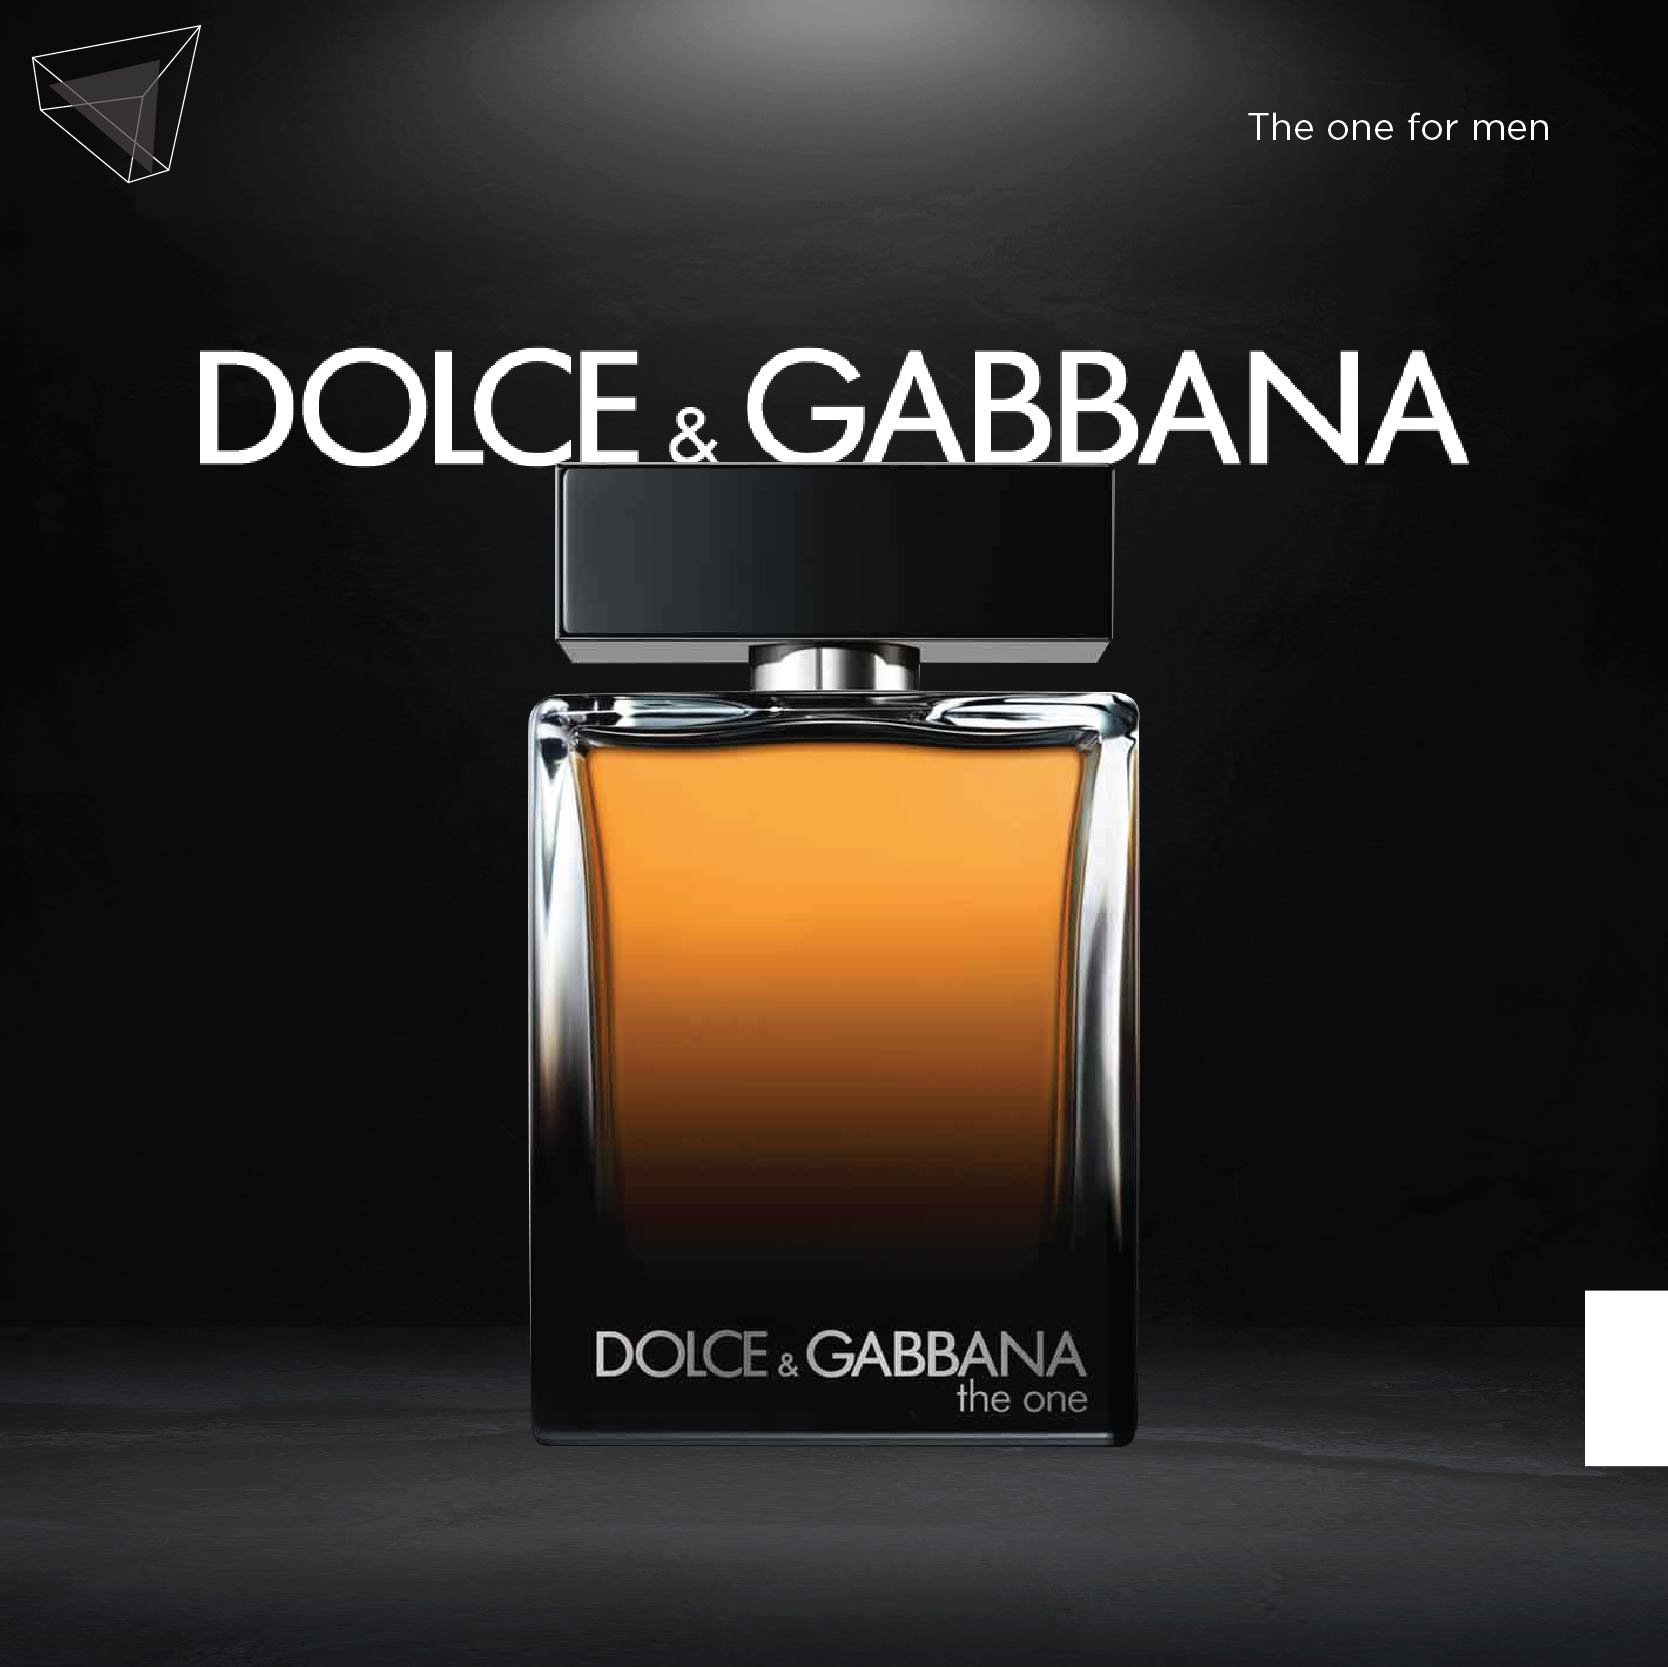 น้ำหอมผู้ชาย ลุคคุณหนู คุณชาย : Dolce and Gabbana The one for men